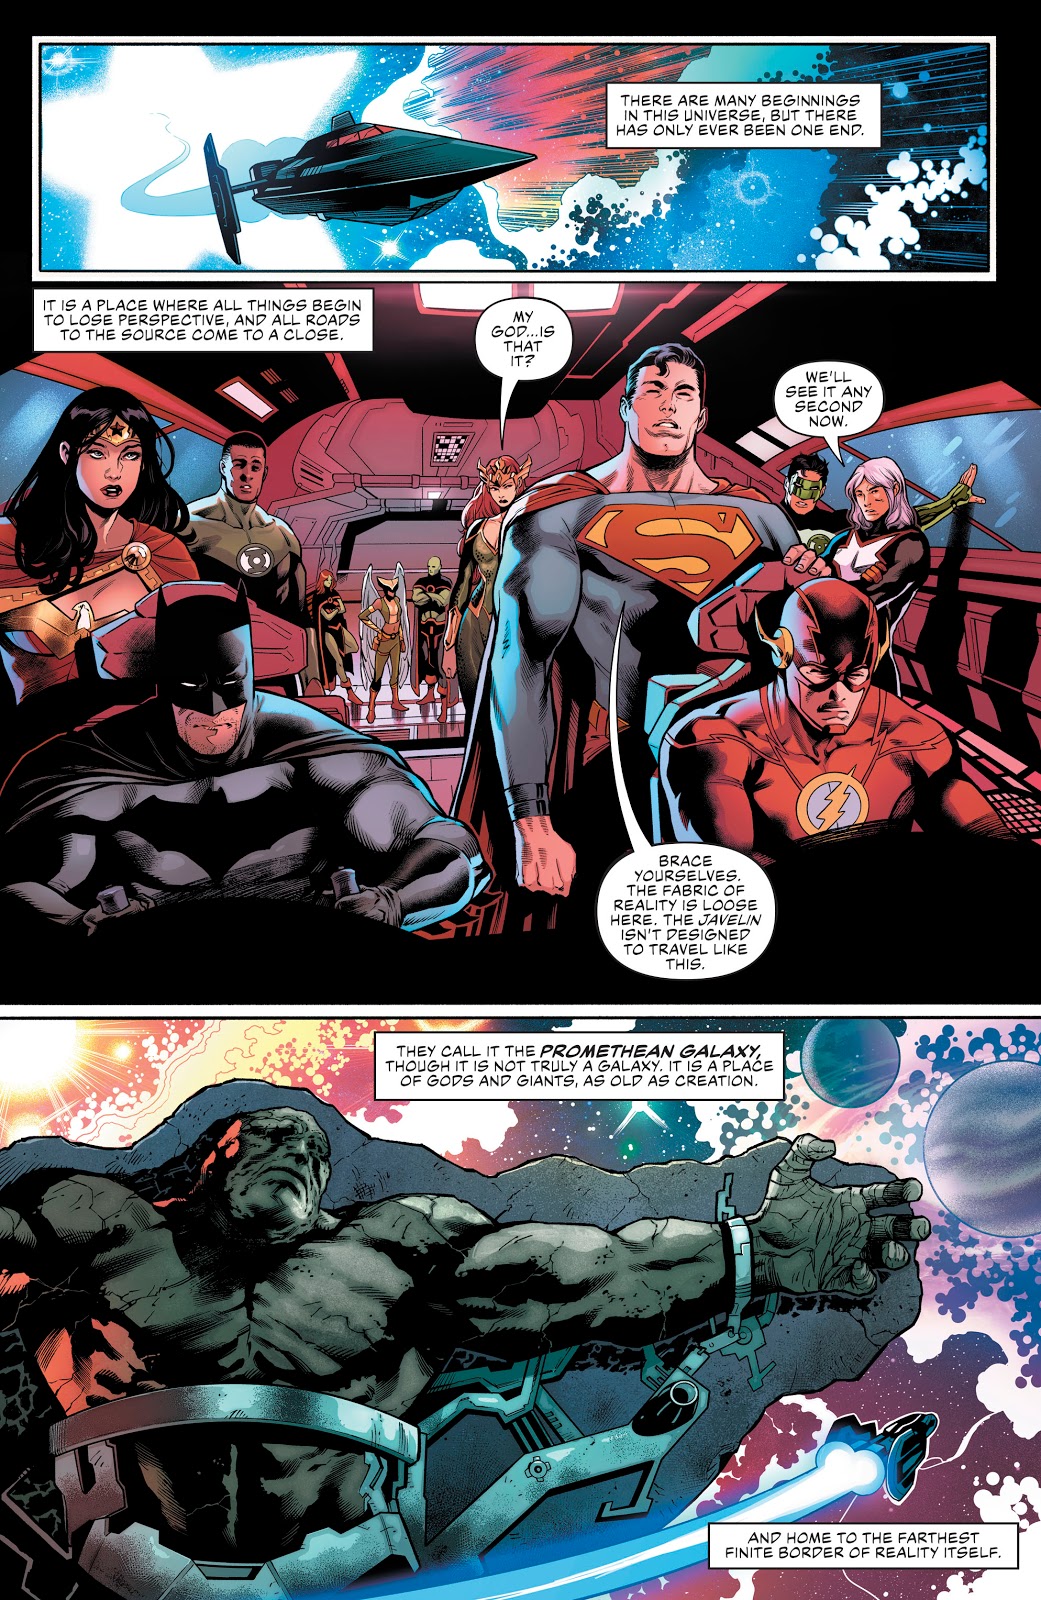 DC Universe Justice League STARMAN Loose 